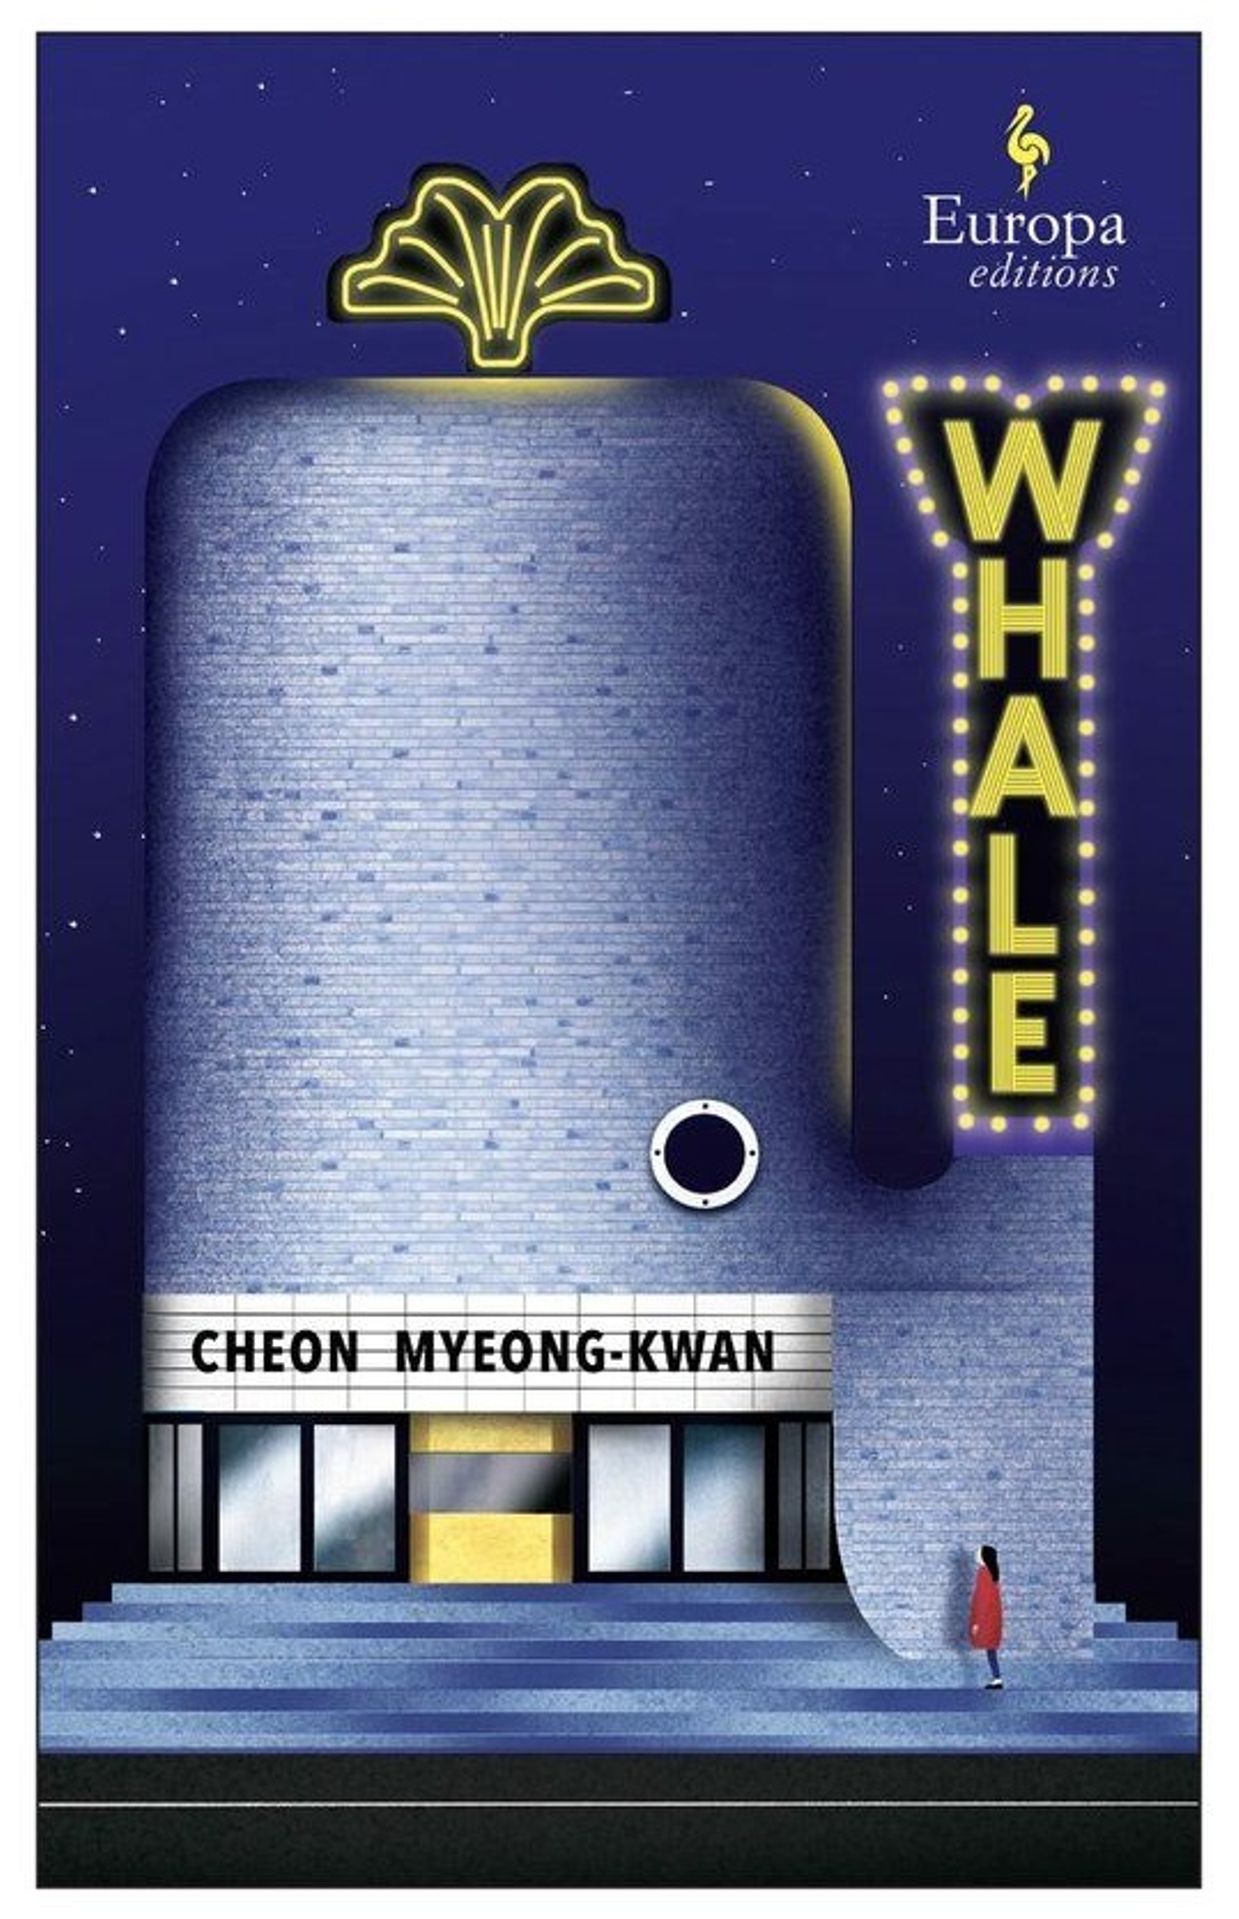 Première de couverture du livre "The Whale" de Cheon Myeong-Kwan.